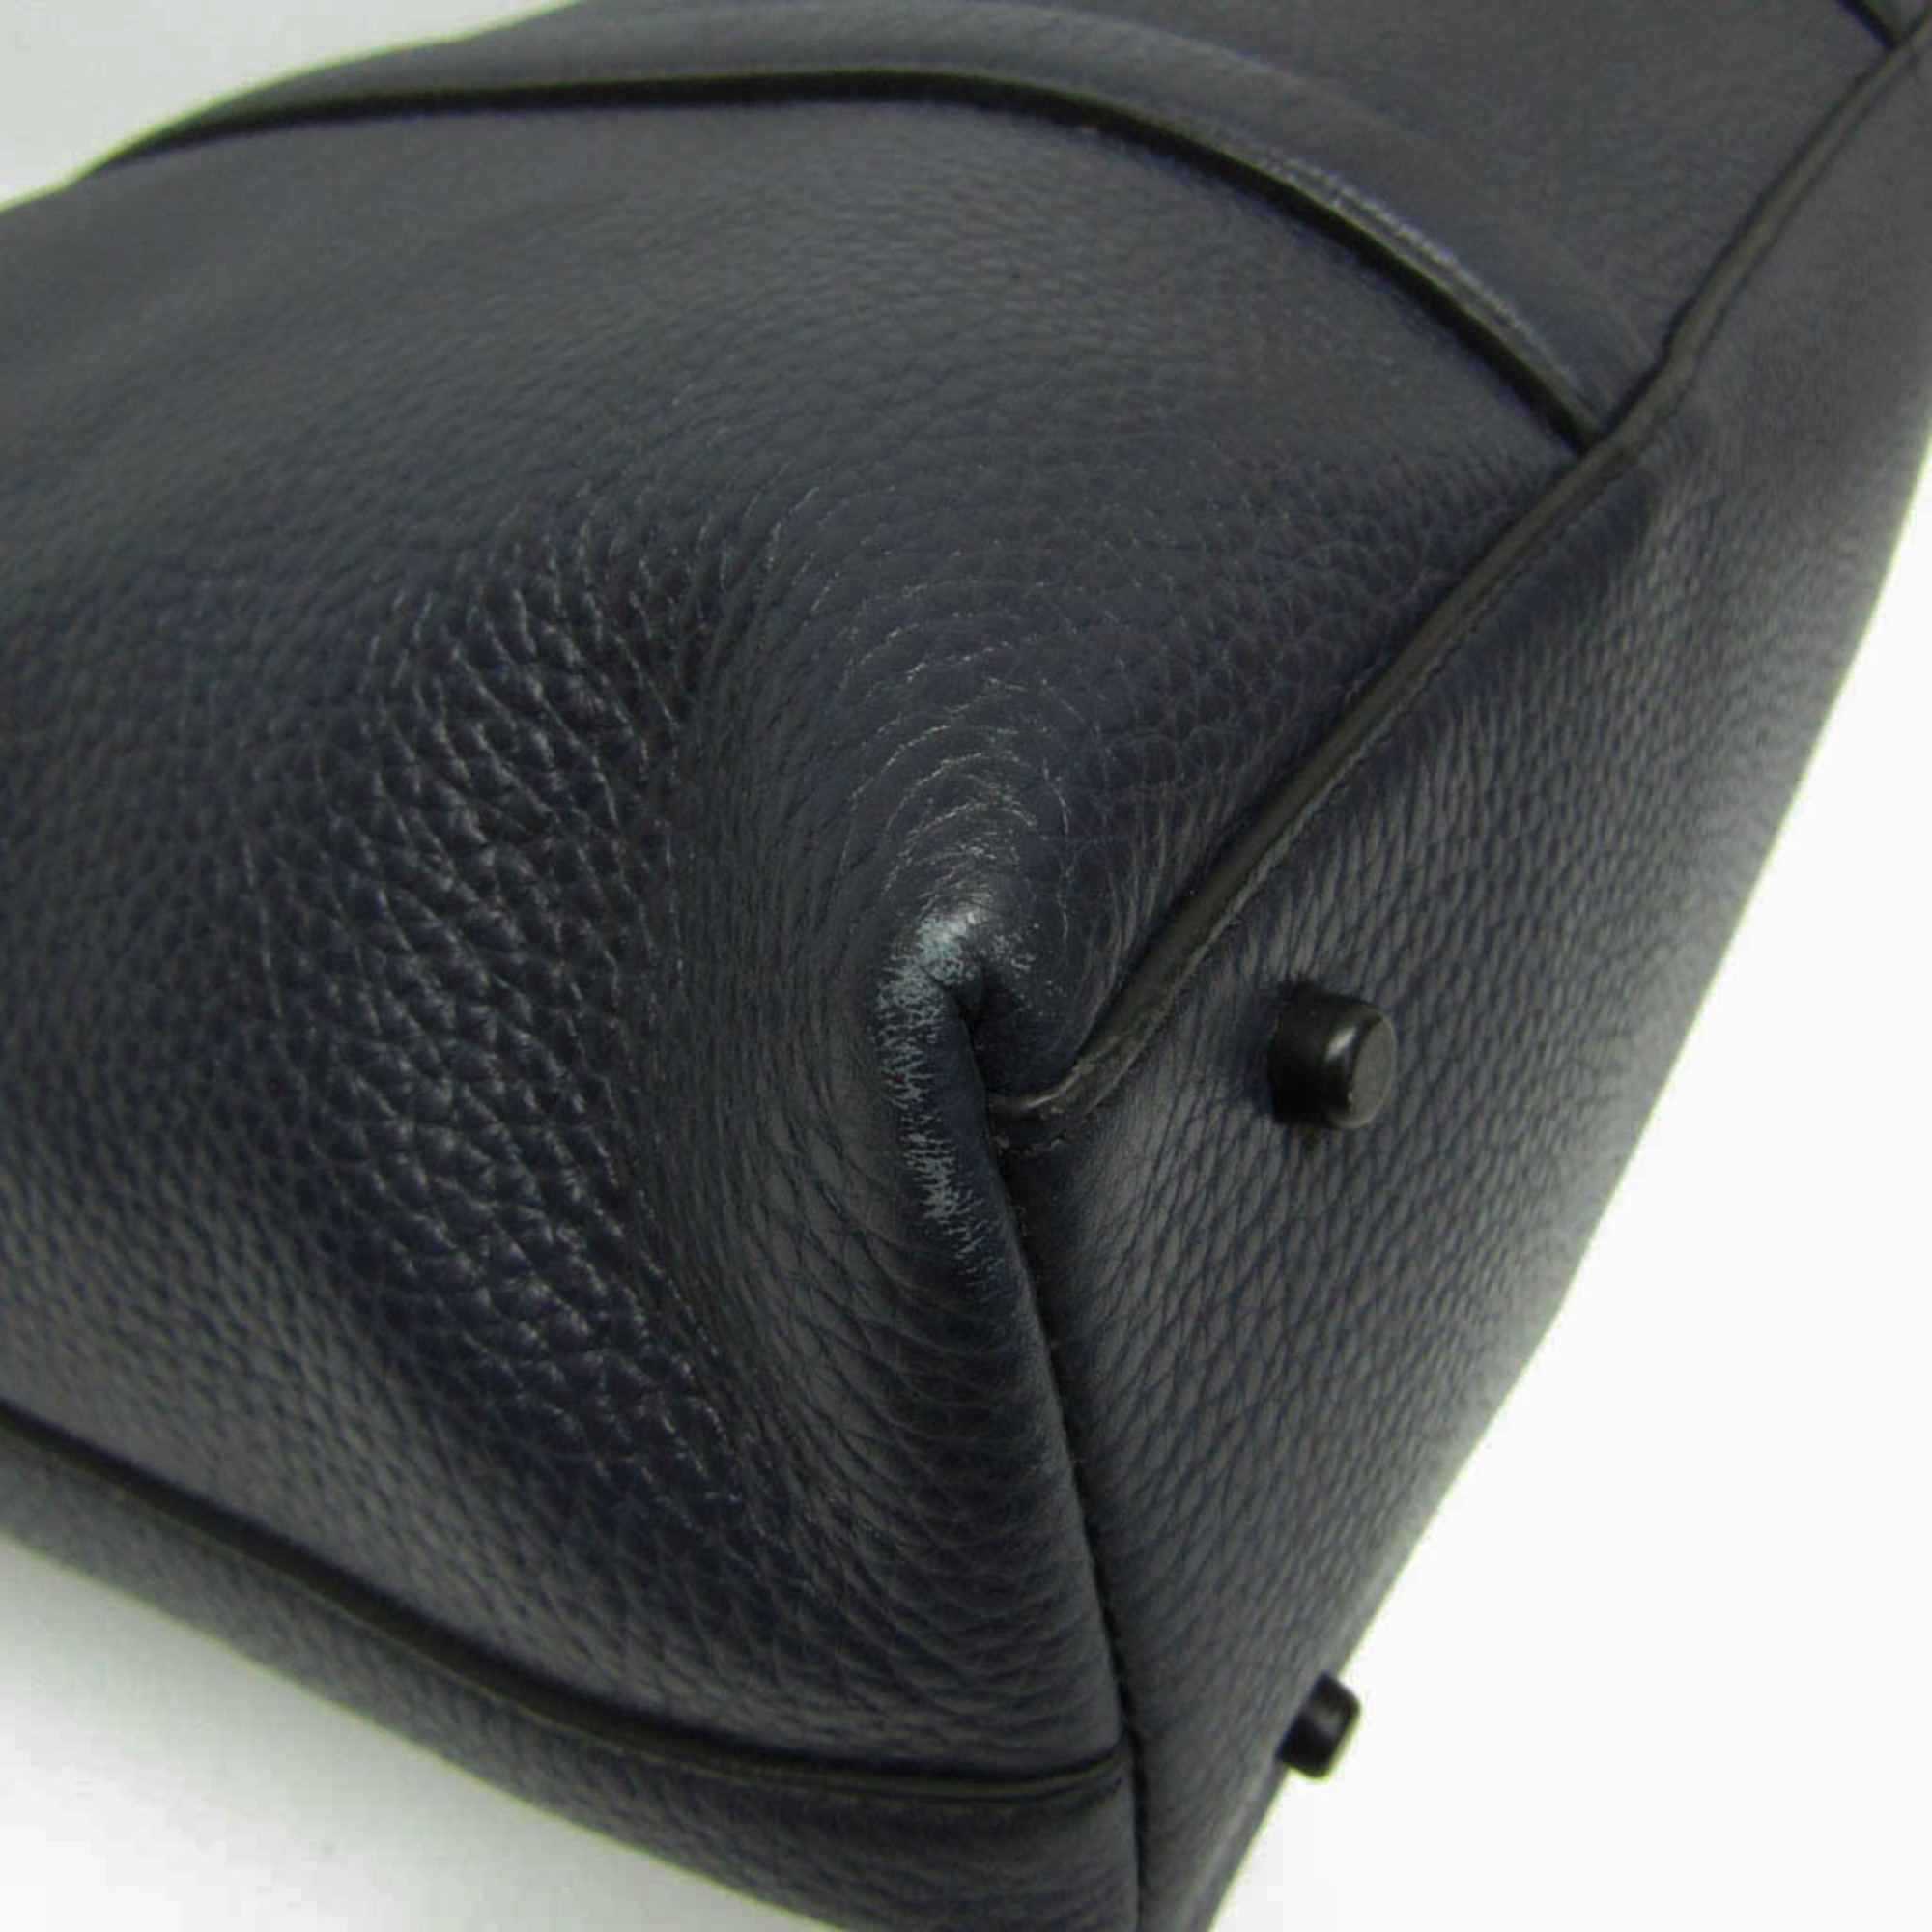 Coach Metropolitan 71807 Men's Leather Shoulder Bag,Tote Bag Black,Navy